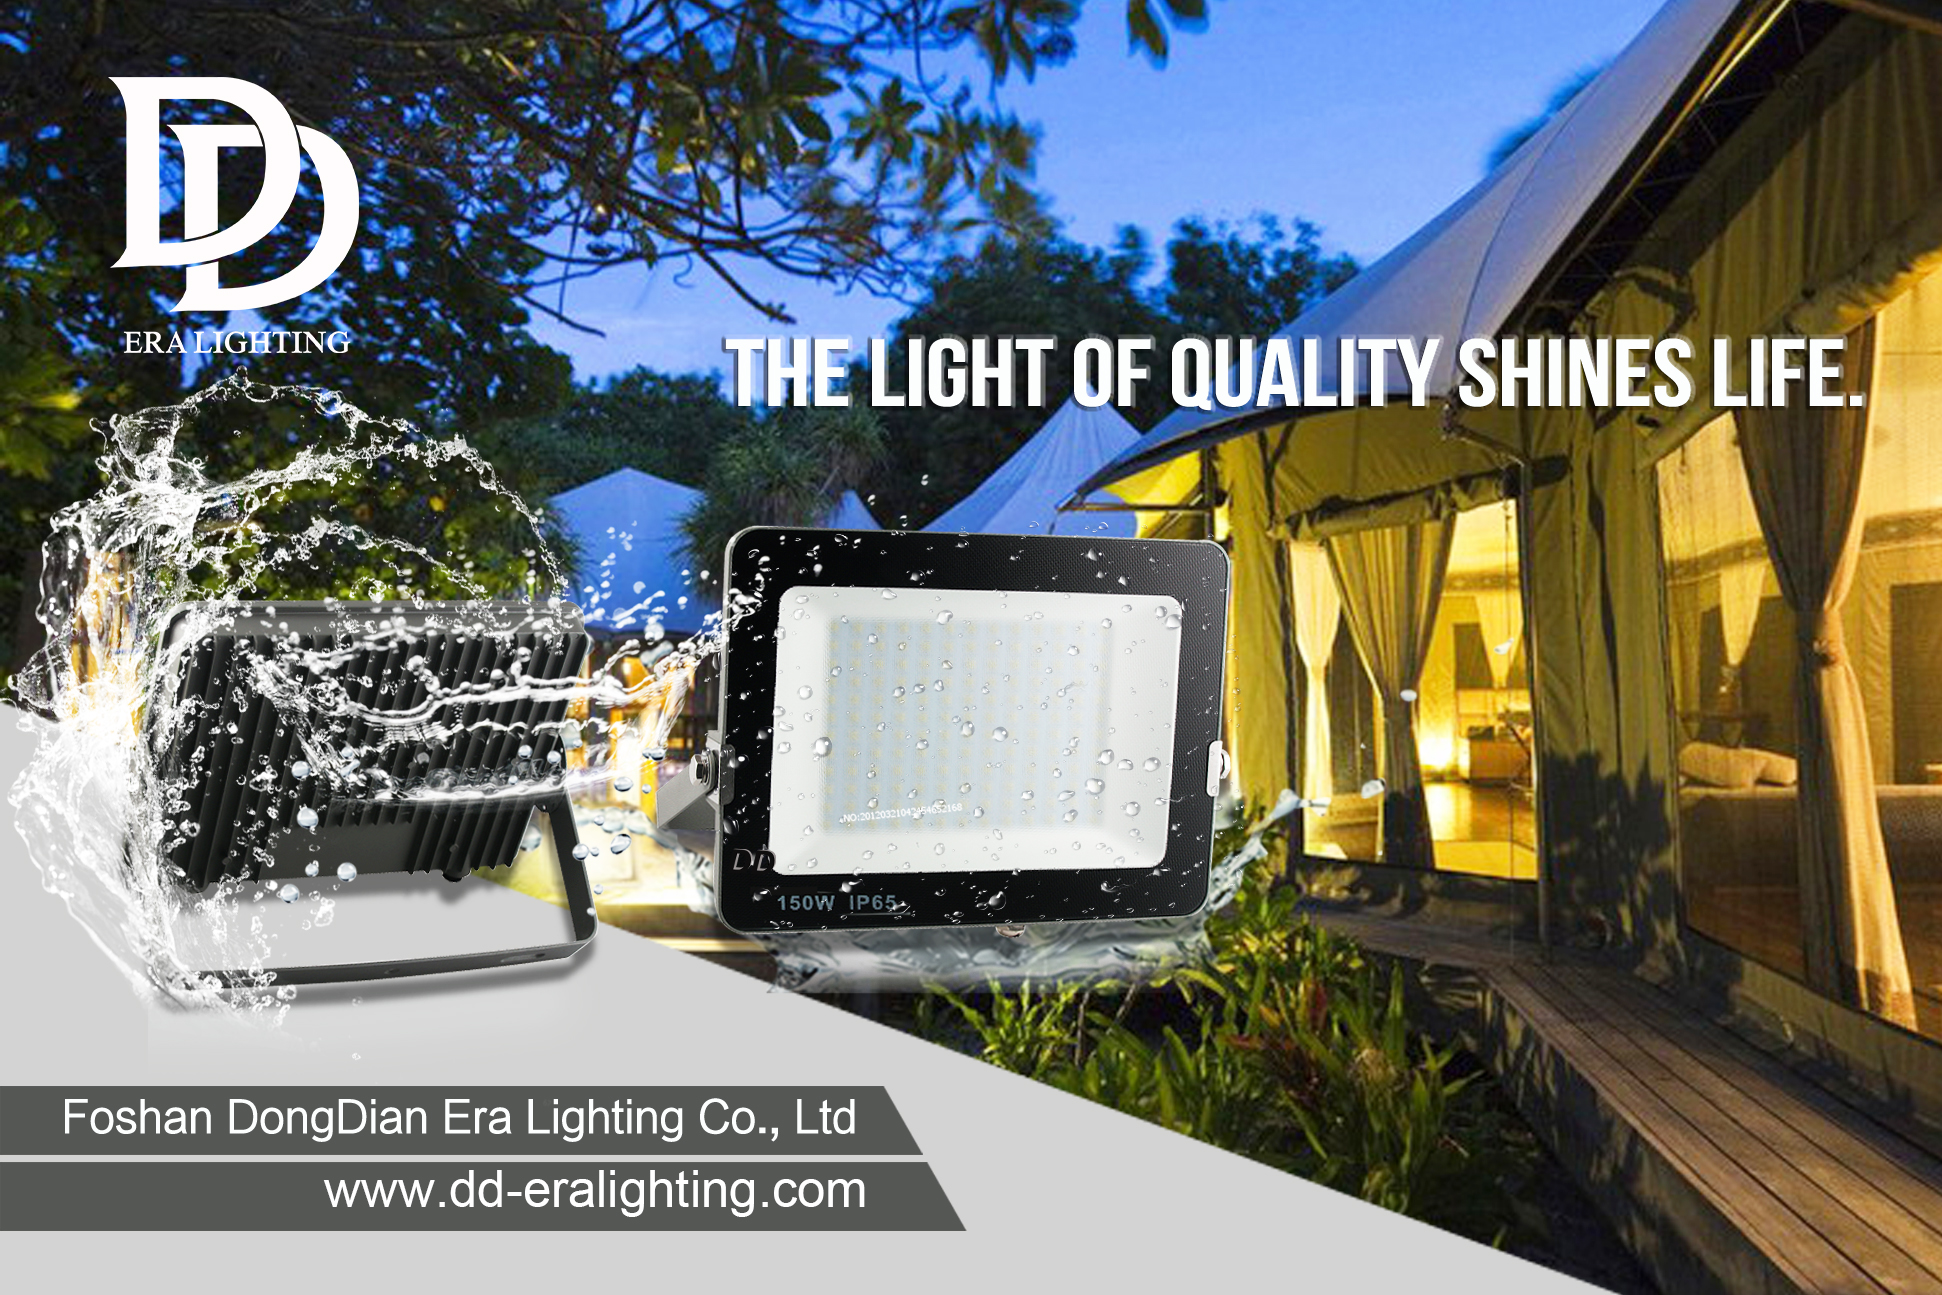 Bóng đèn LED | Ring mở rộng hệ thống chiếu sáng thông minh với bóng đèn năng lượng mặt trời và bóng đèn trong nhà